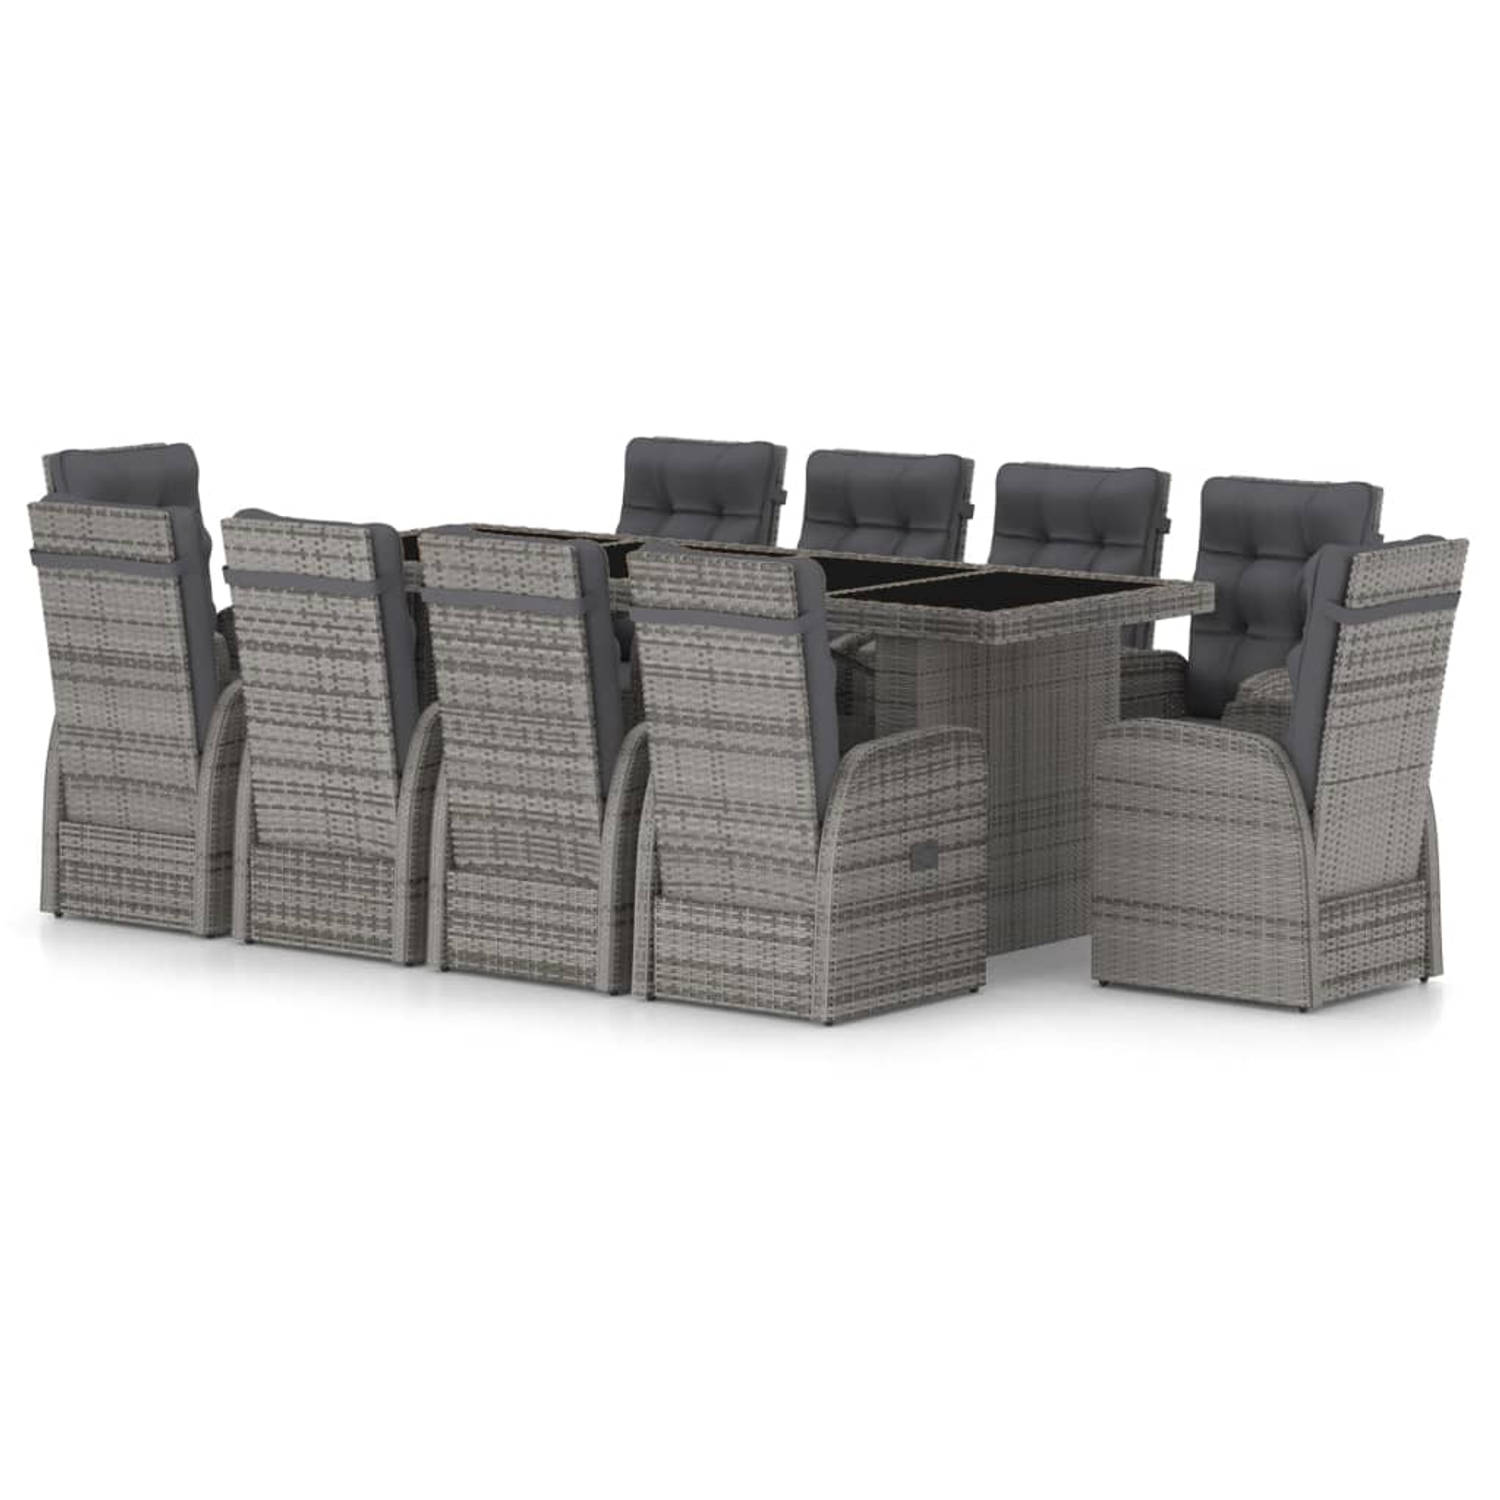 The Living Store Tuinset van Poly Rattan - Grijs - 240x90x74 cm - Verstelbare stoelen - Inclusief kussens - Levering bevat 8 stoelen zonder voetensteun - 2 stoelen met voetensteun